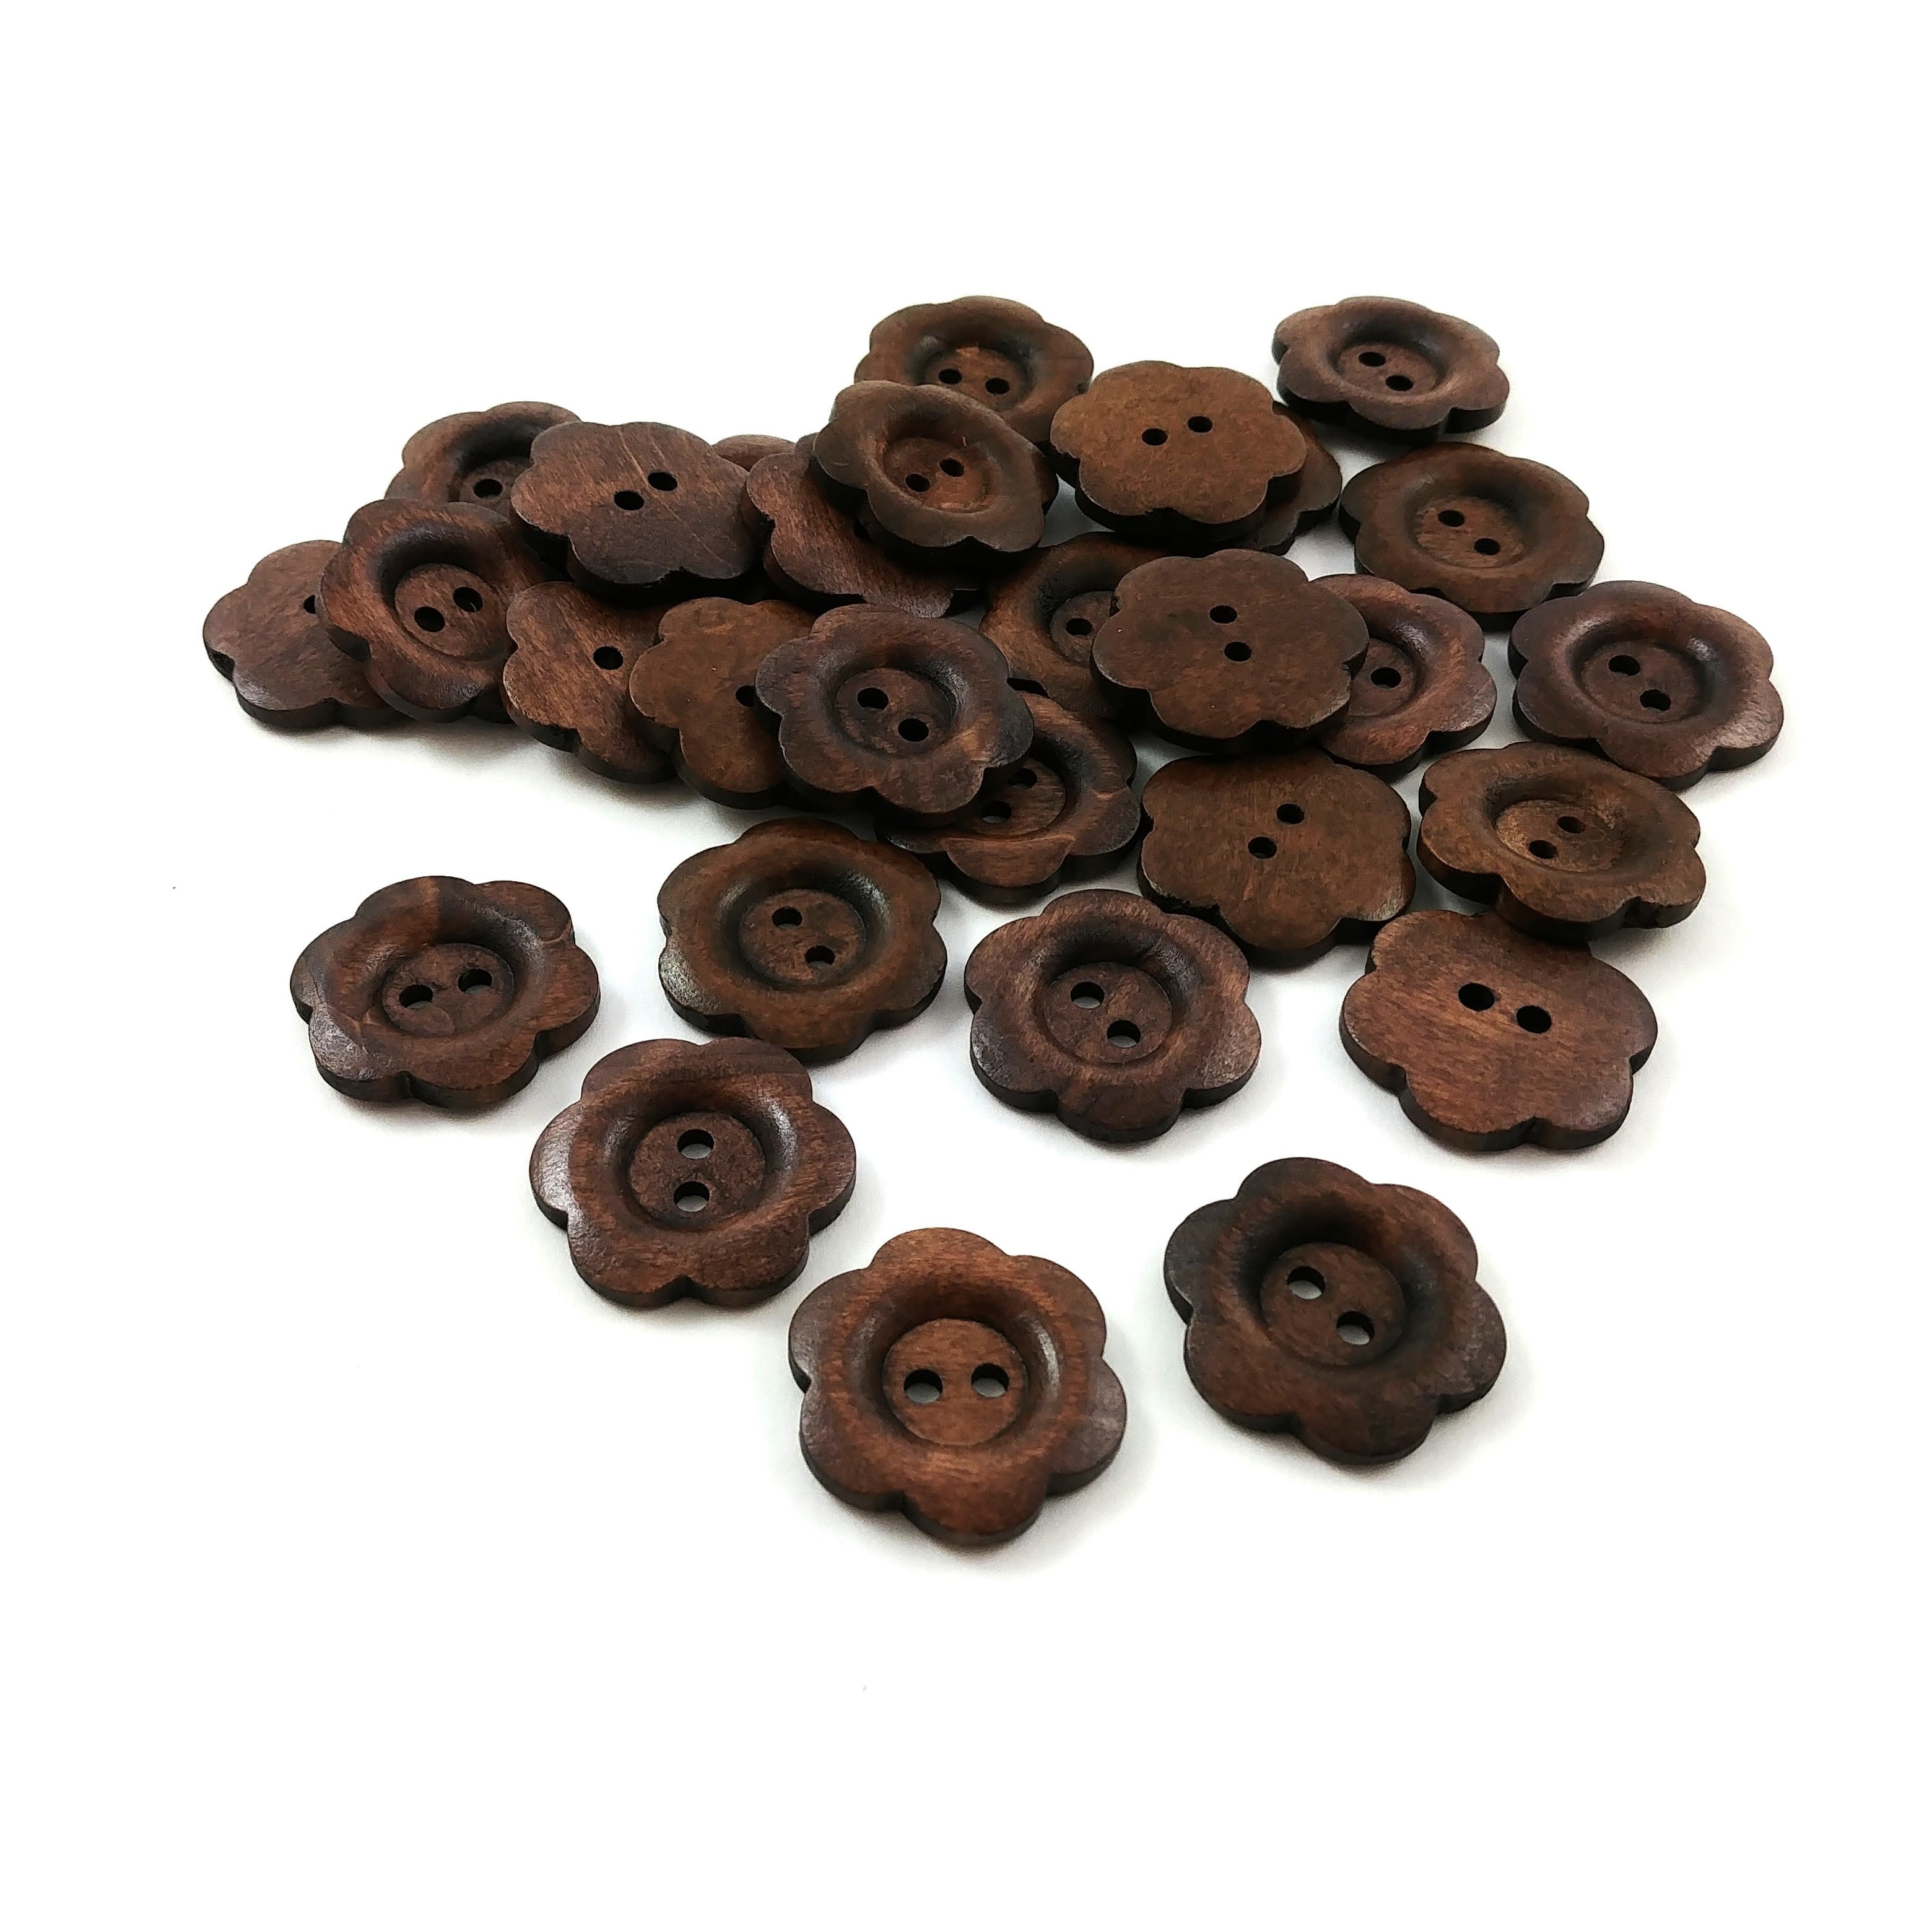 6 boutons de bois brun foncé fleur 25mm